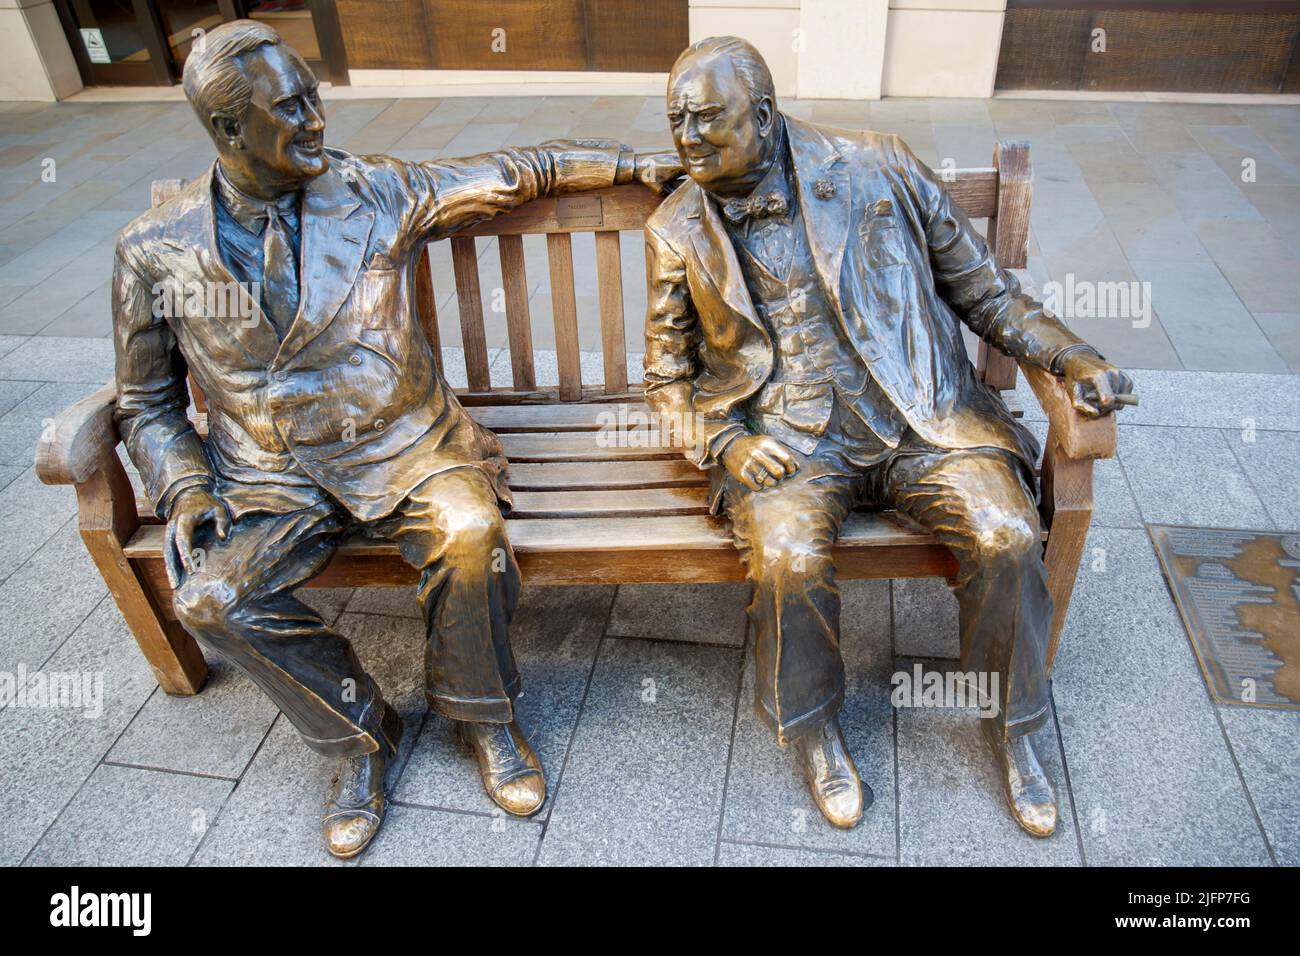 Bronzeskulptur zur Feier der Beziehung zwischen Churchill und Roosevelt, New Bond Street, London, Samstag, 28. Mai, 2022. Stockfoto